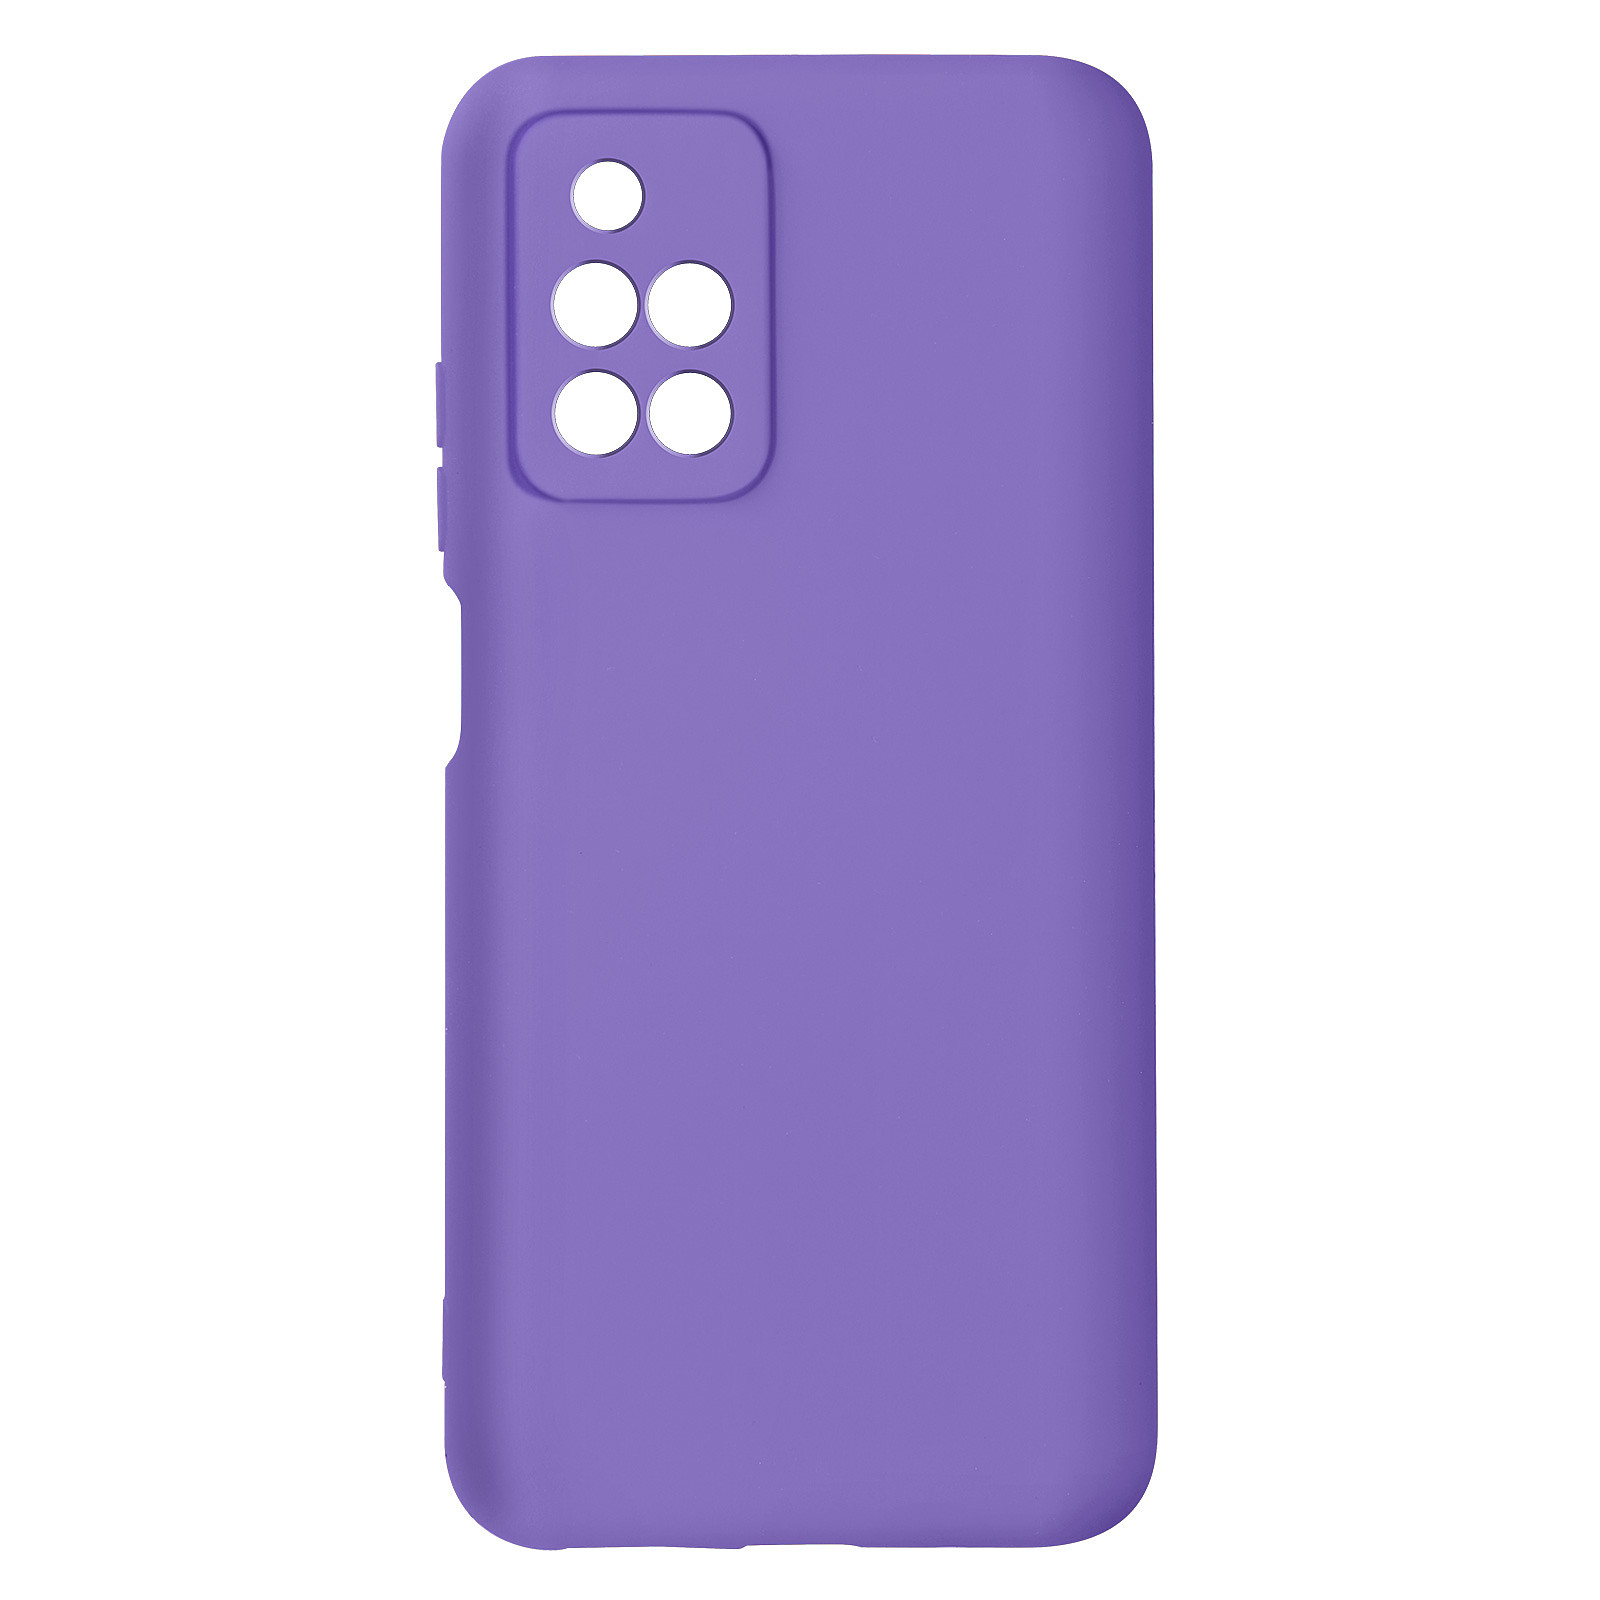 Avizar Coque pour Xiaomi Redmi 10 Silicone Semi-rigide Finition Soft-touch Fine violet - Coque telephone Avizar